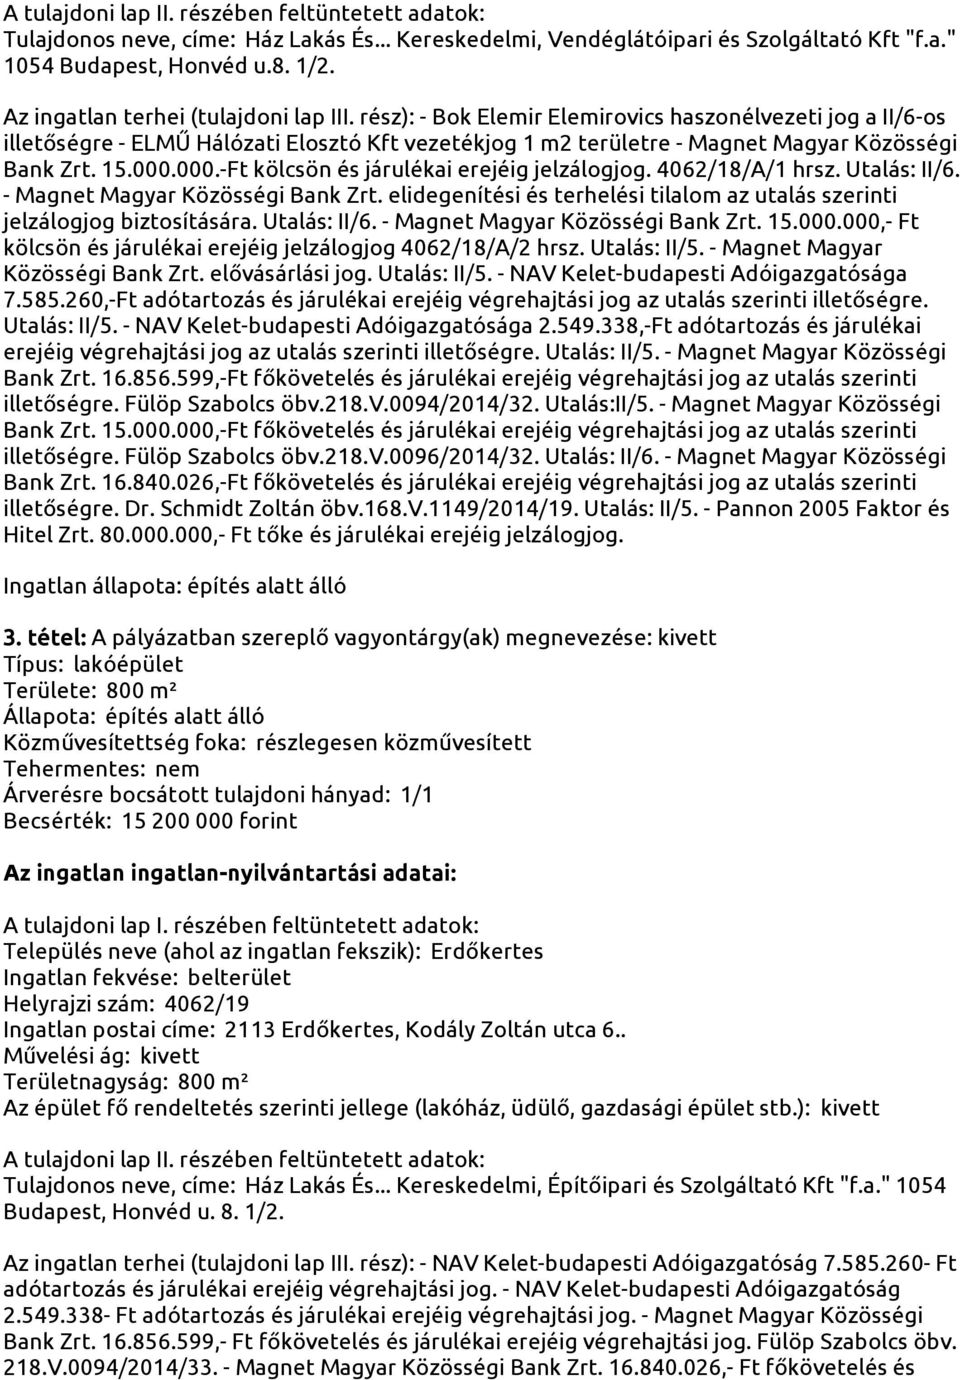 rész): - Bok Elemir Elemirovics haszonélvezeti jog a II/6-os illetőségre - ELMŰ Hálózati Elosztó Kft vezetékjog 1 m2 területre - Magnet Magyar Közösségi Bank Zrt. 15.000.